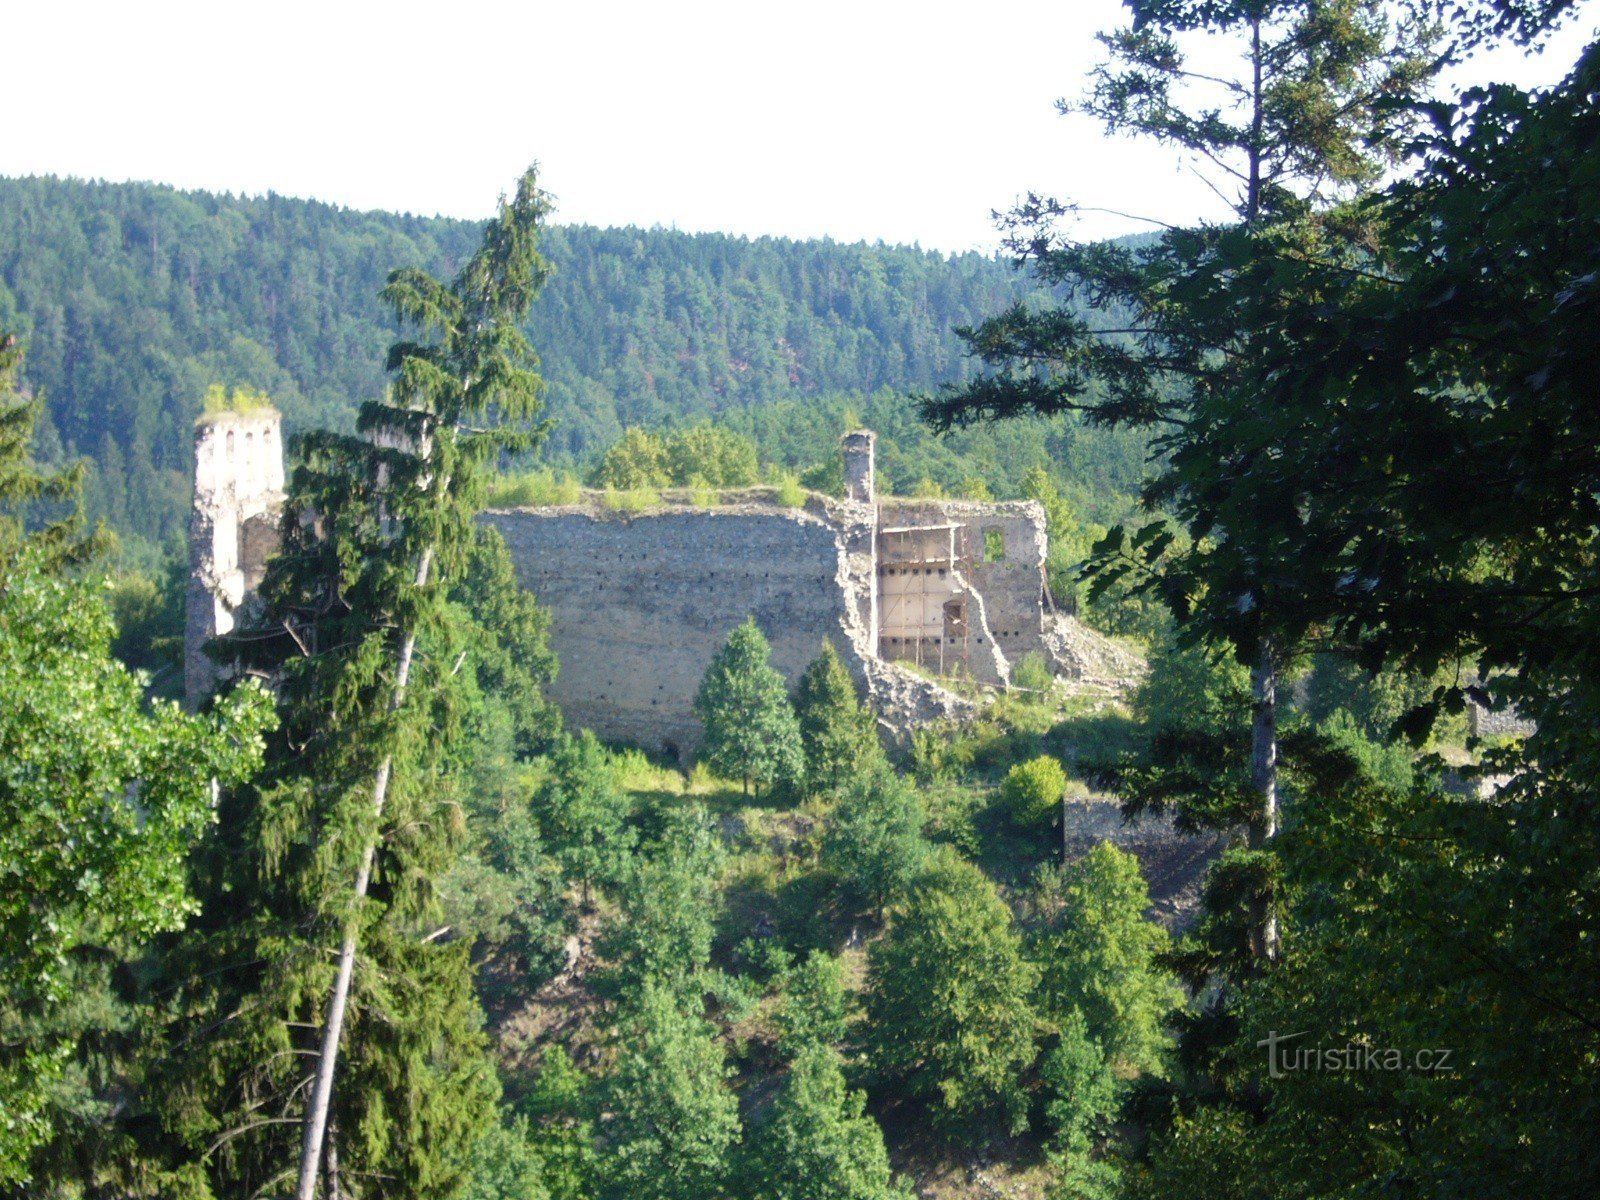 view from the NS Holubov route - Stará Rožmberská cesta site - to the Dívčí kámen castle